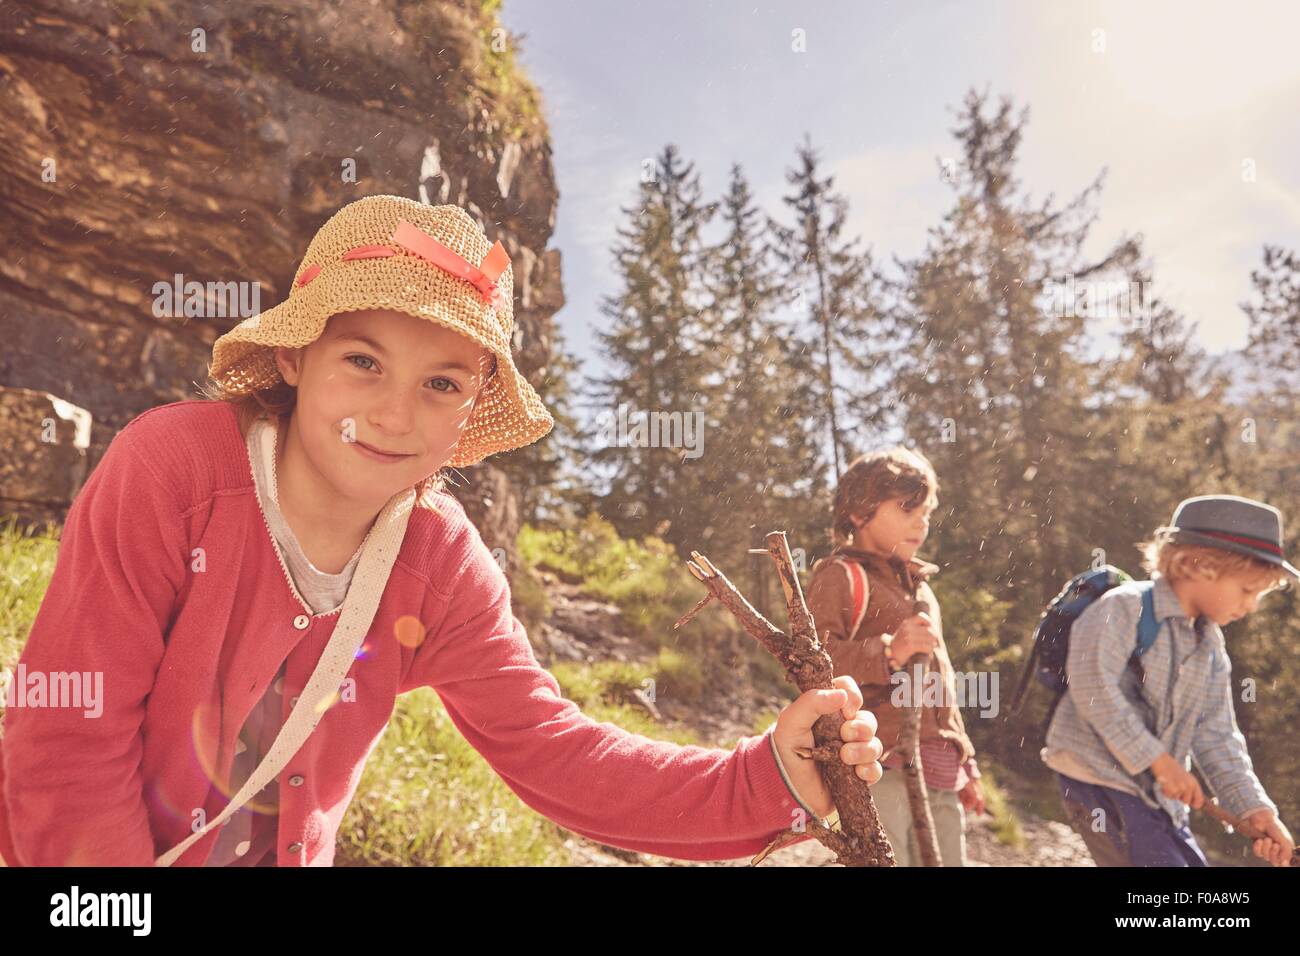 Trois enfants explorer forest Banque D'Images